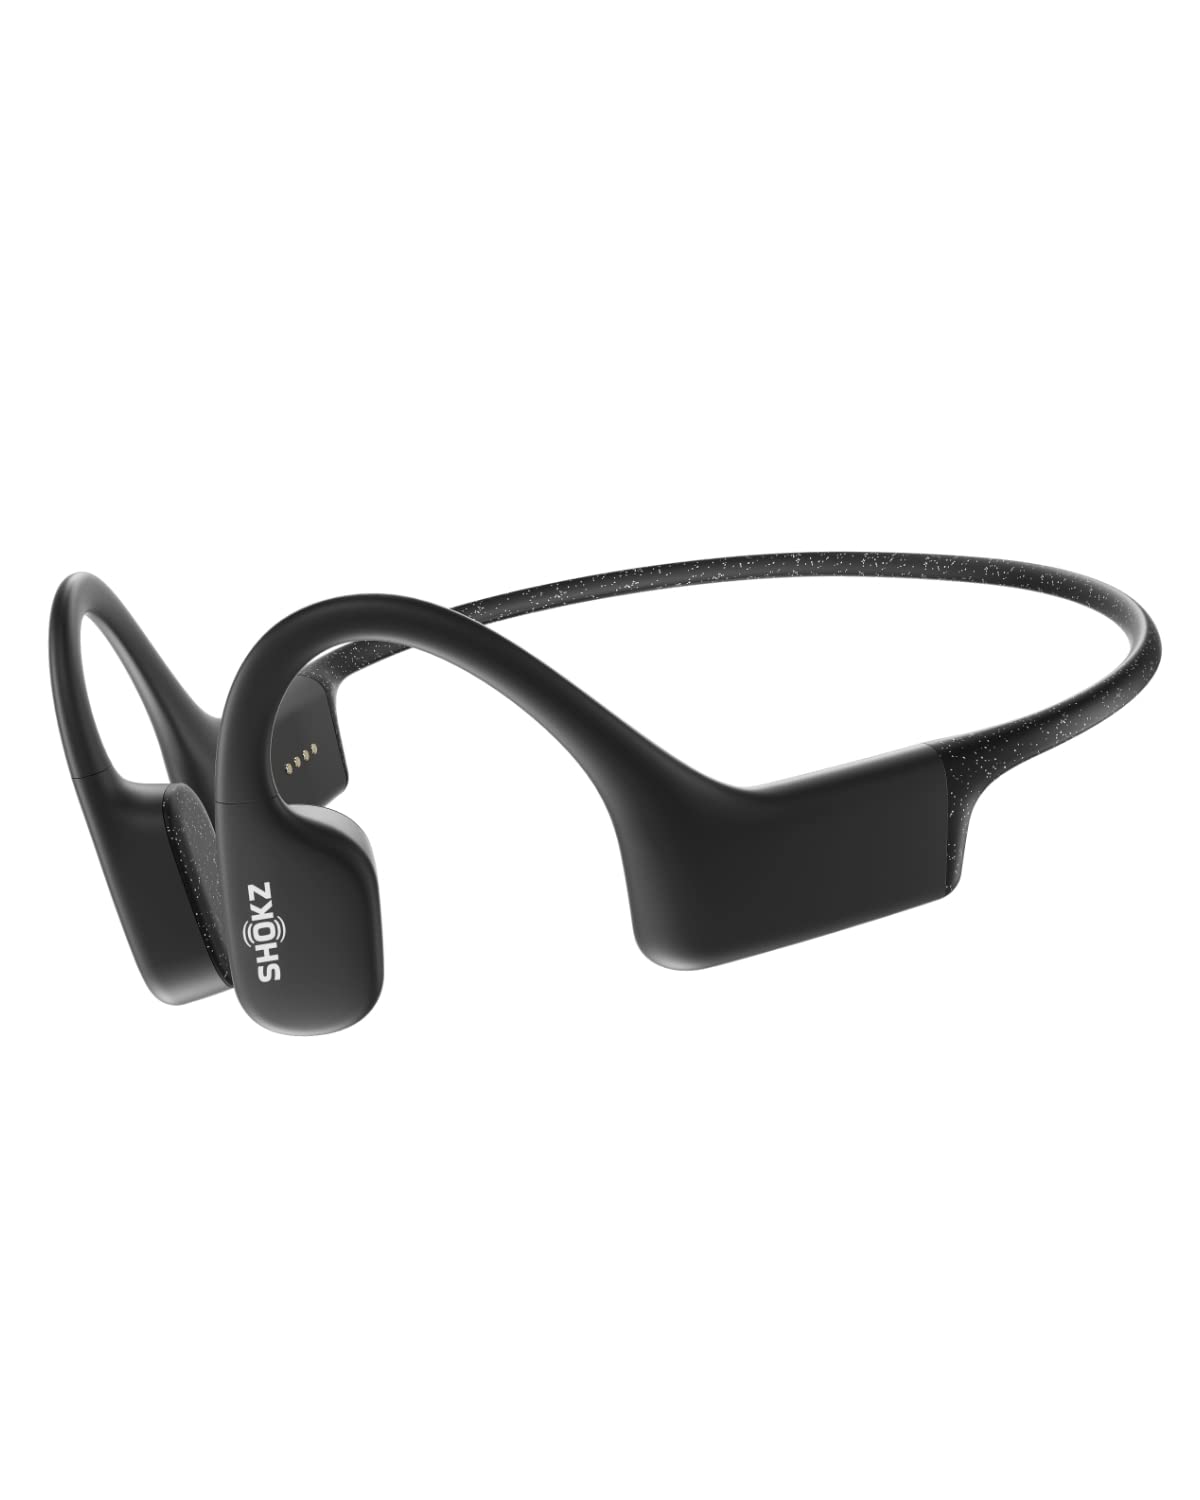  SHOKZ OpenSwim 水泳 MP3 - 水泳用骨伝導 MP3 防水ヘッドフォン - オープンイヤーワイヤレスヘッドフォン、Bluetooth なし、ノーズクリップと耳栓付き (ブラ...